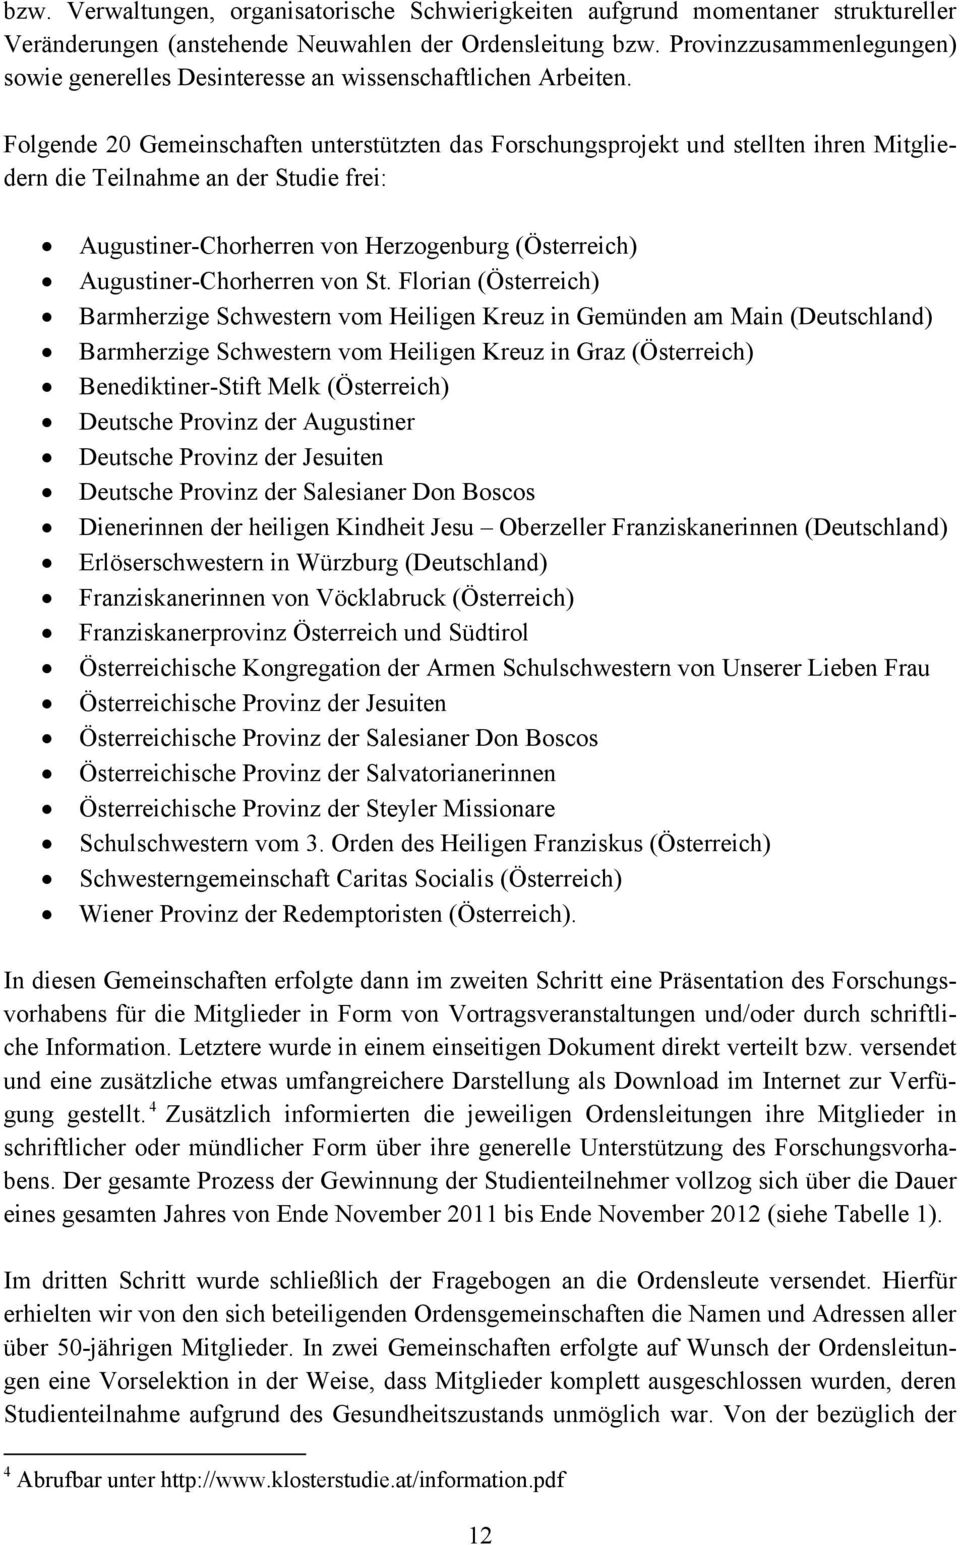 Folgende 20 Gemeinschaften unterstützten das Forschungsprojekt und stellten ihren Mitgliedern die Teilnahme an der Studie frei: Augustiner-Chorherren von Herzogenburg (Österreich)